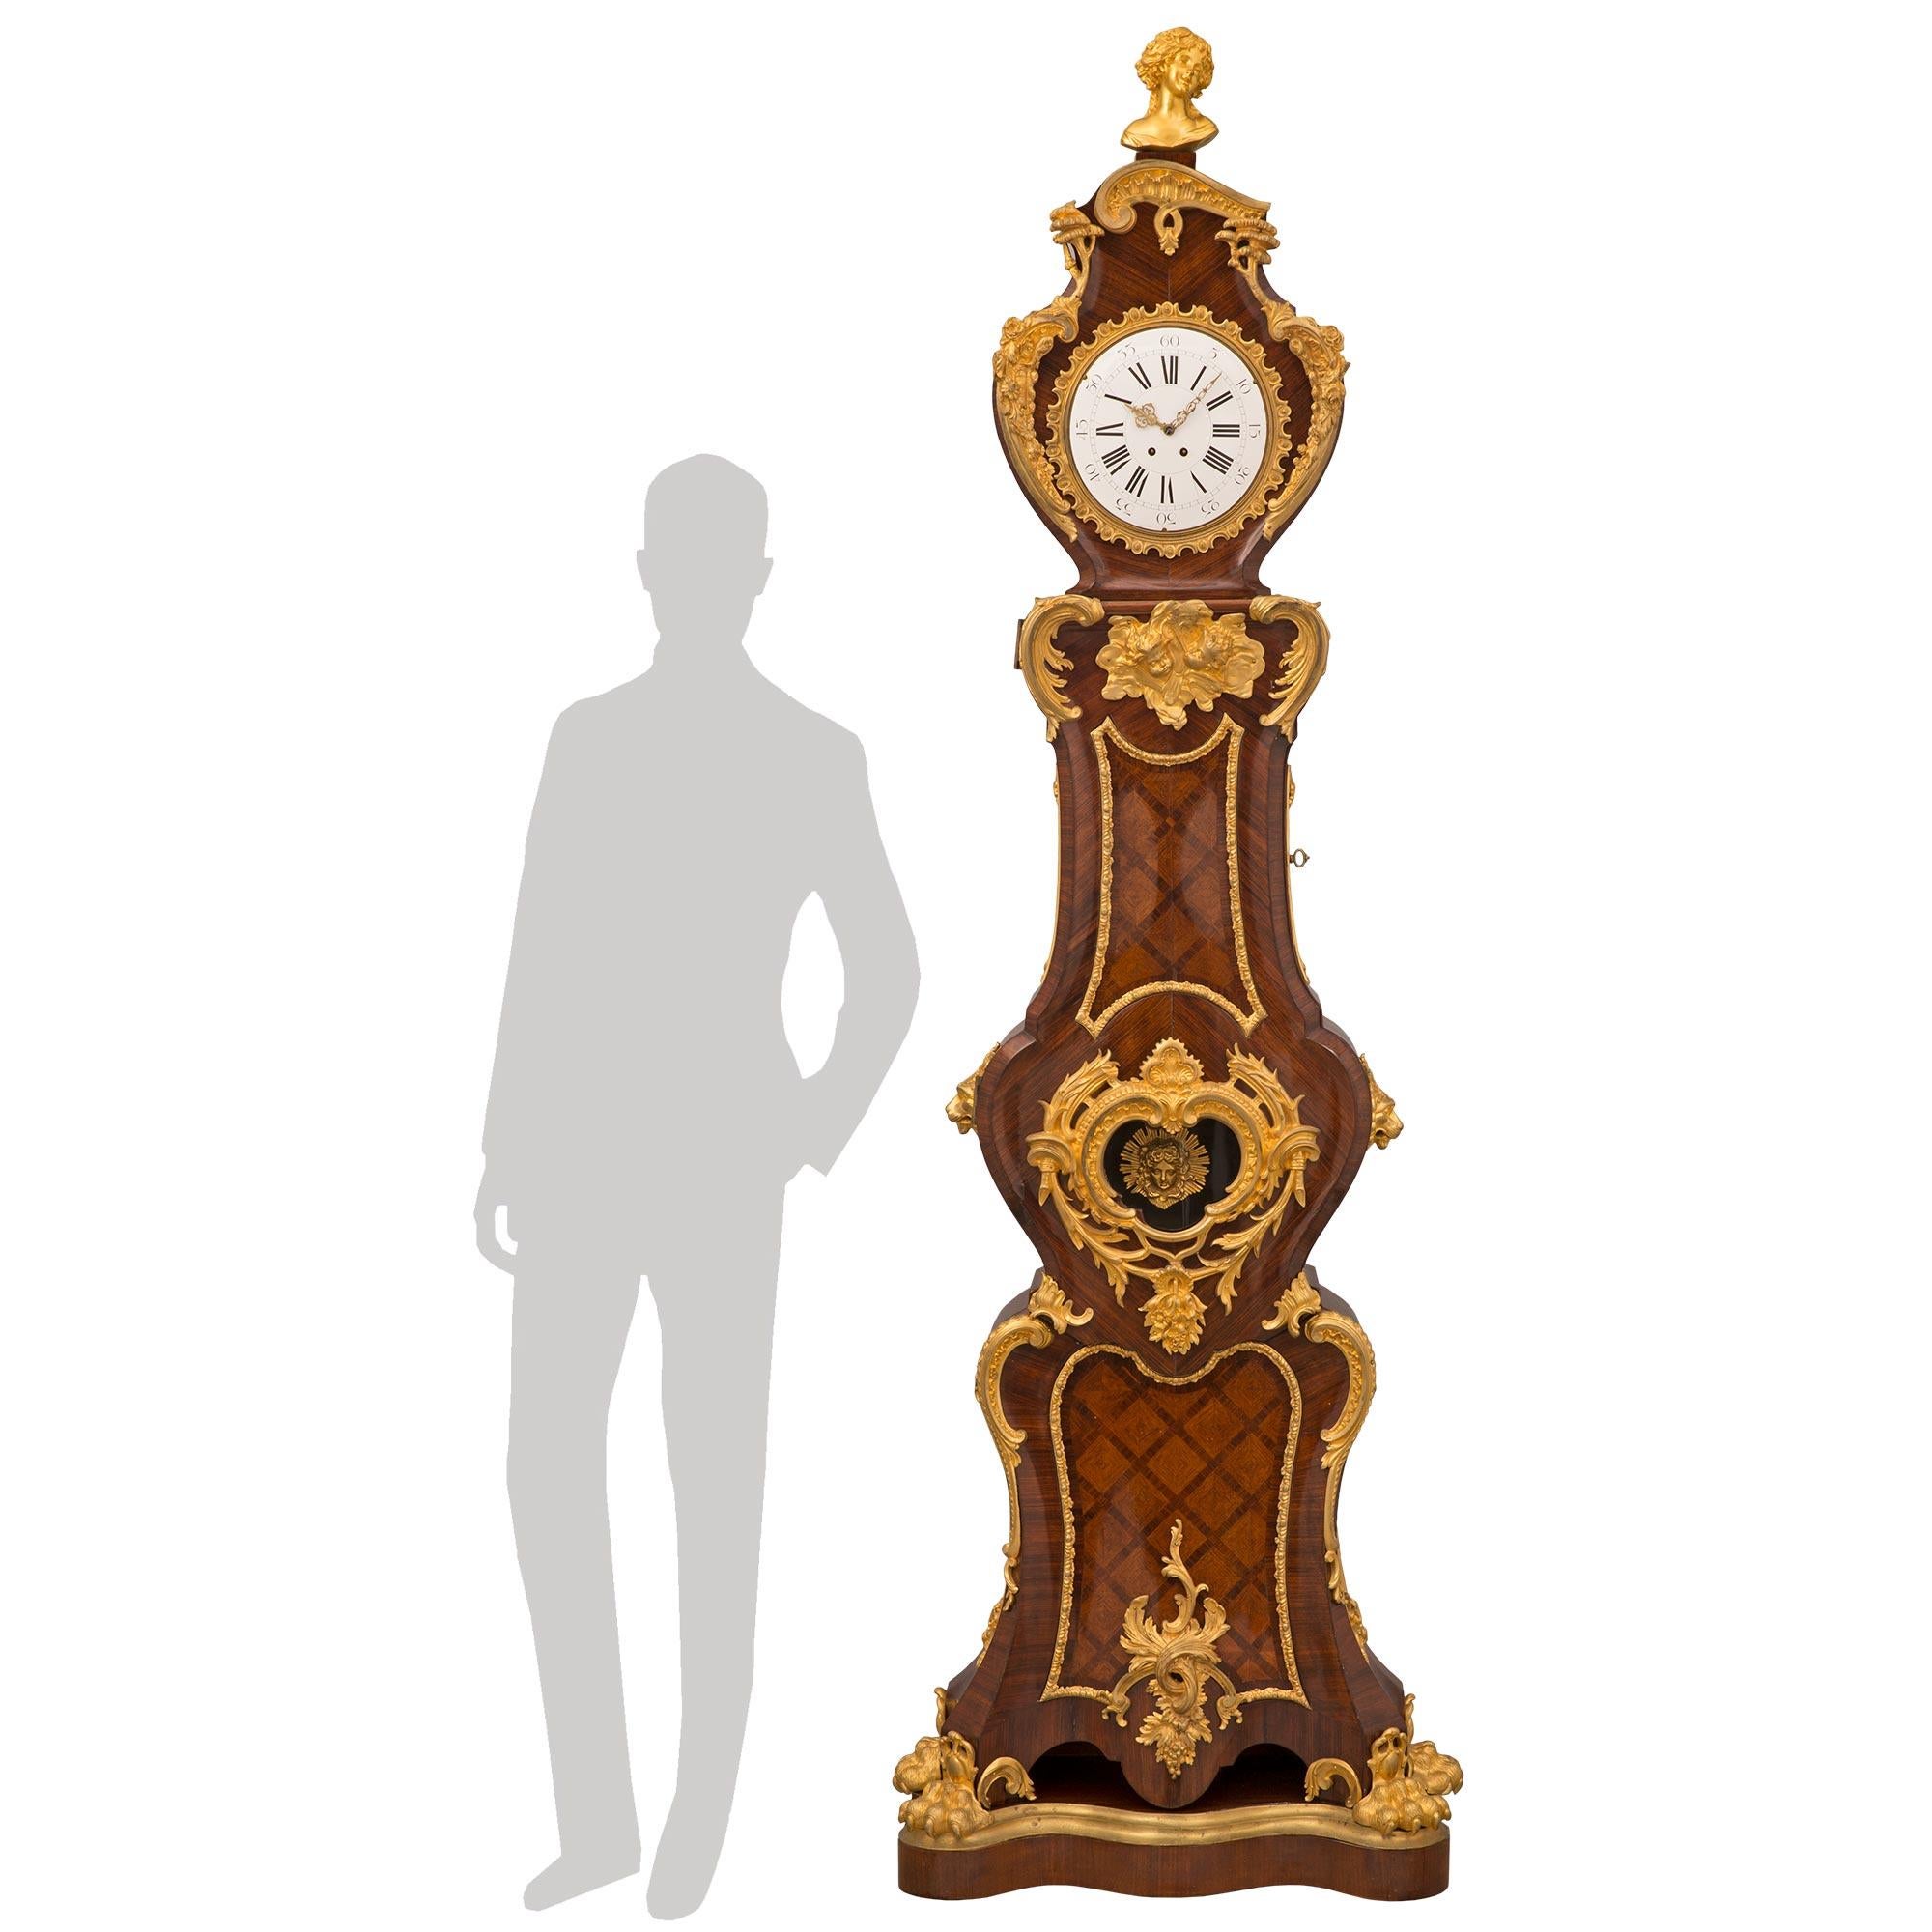 Une spectaculaire horloge de grand-père française du milieu du 19ème siècle, de très haute qualité, en bois de roi, bois de tulipe et bronze doré. L'horloge est surélevée par une fine base en bois de roi de forme festonnée avec une bande de bronze